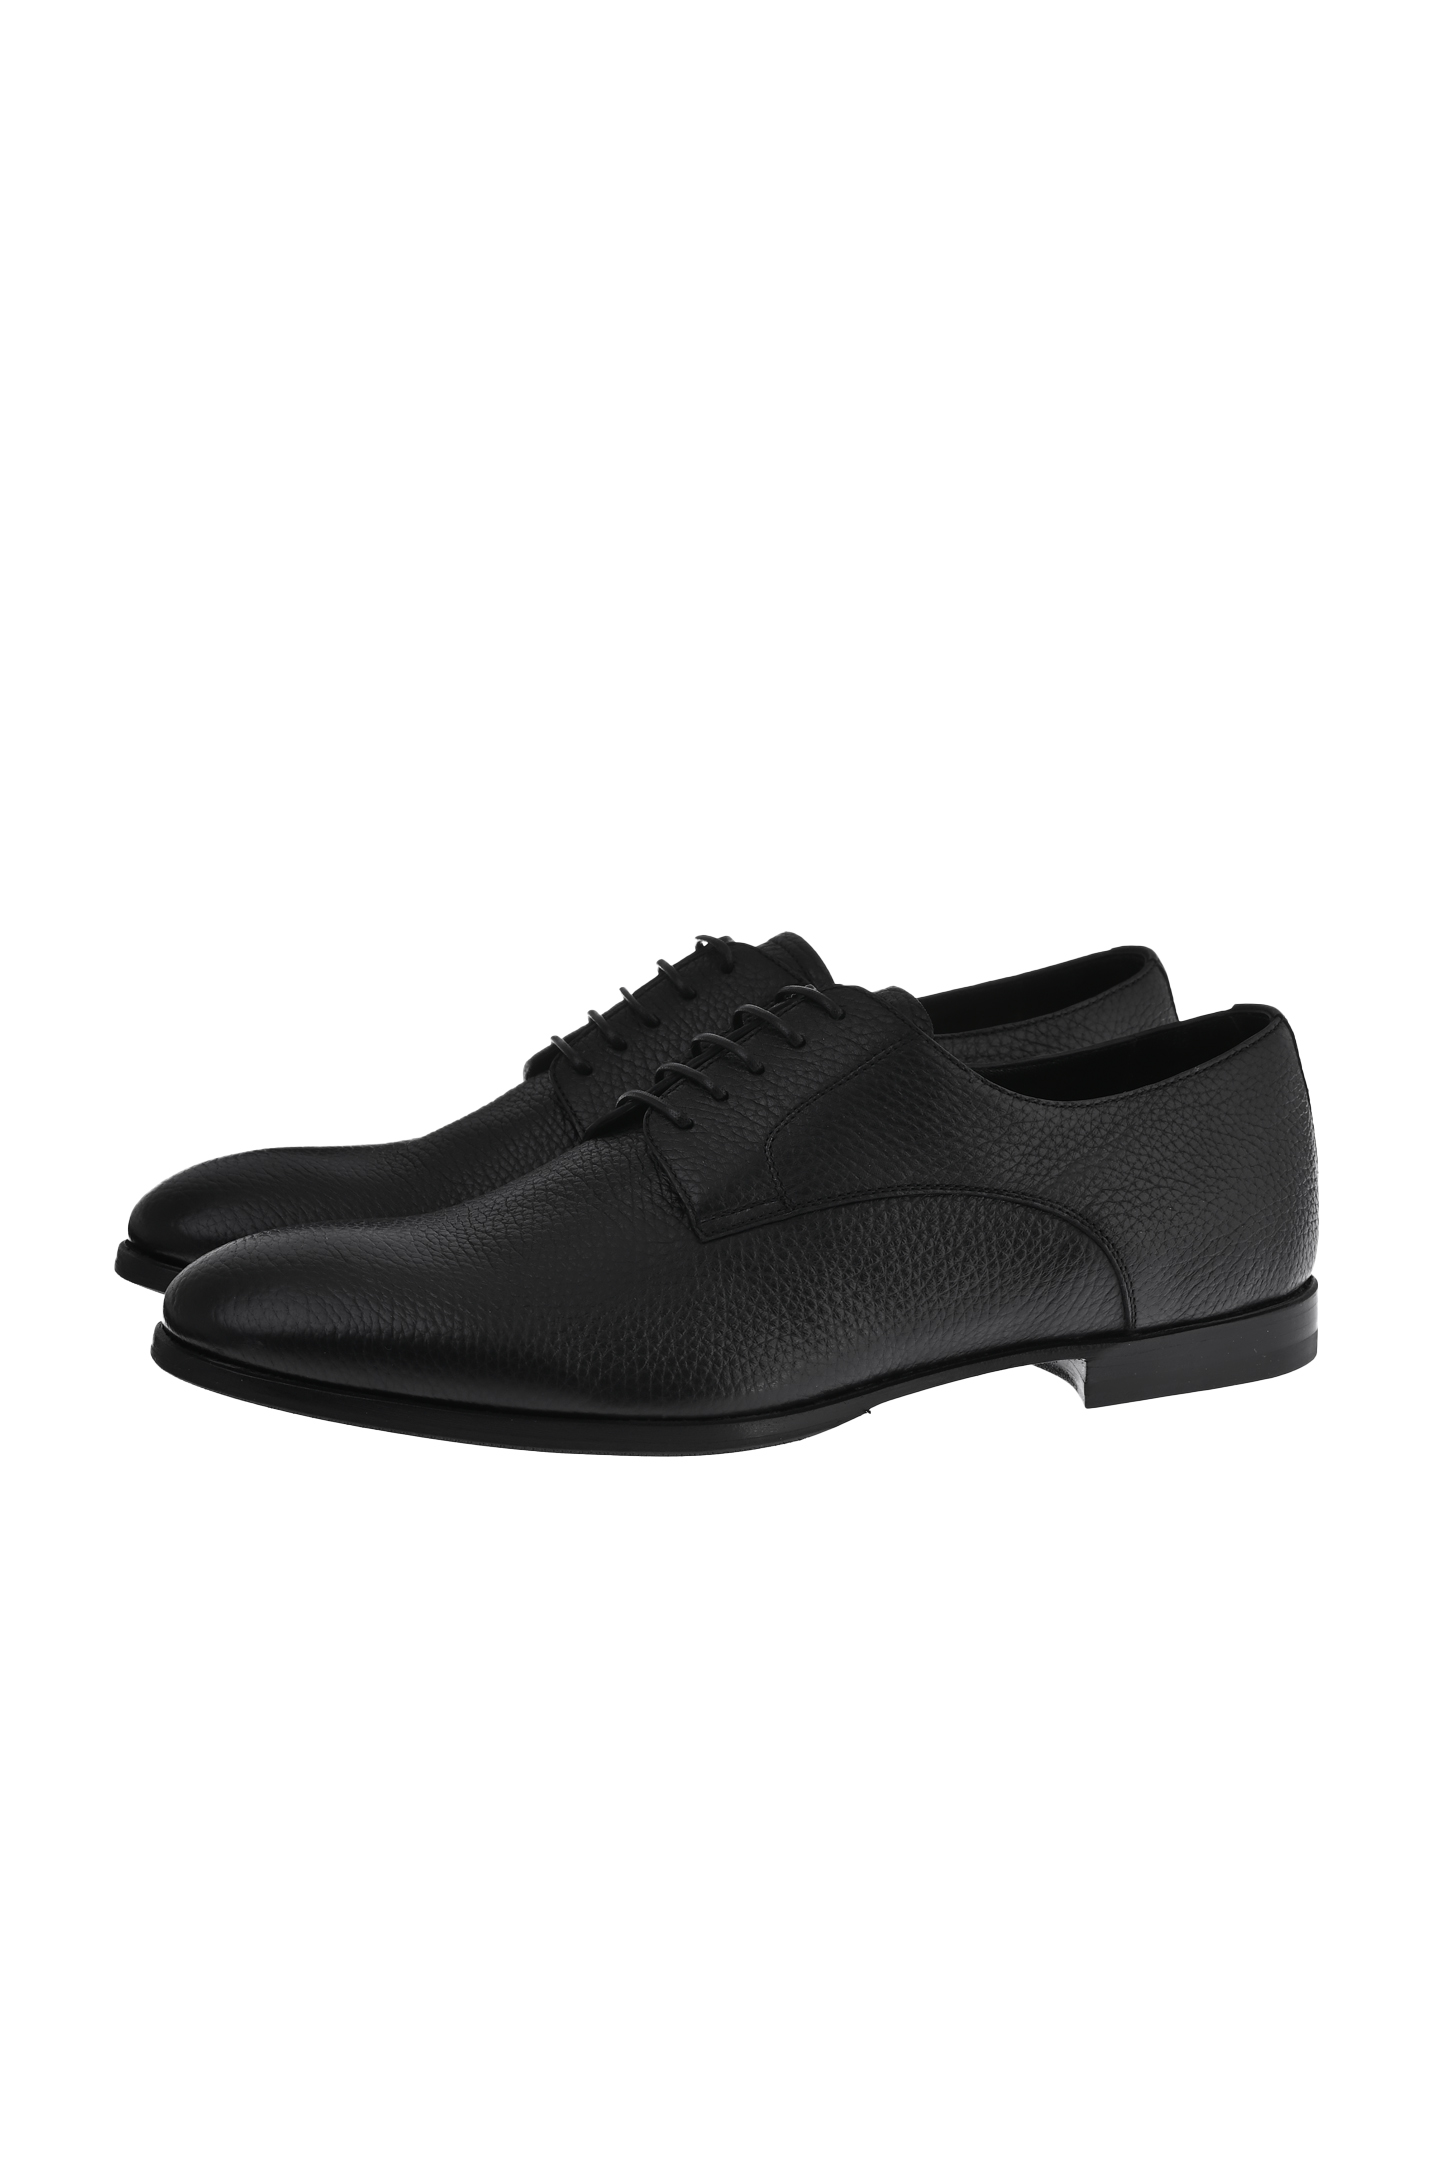 Туфли BARRETT 211U017, цвет: Черный, Мужской